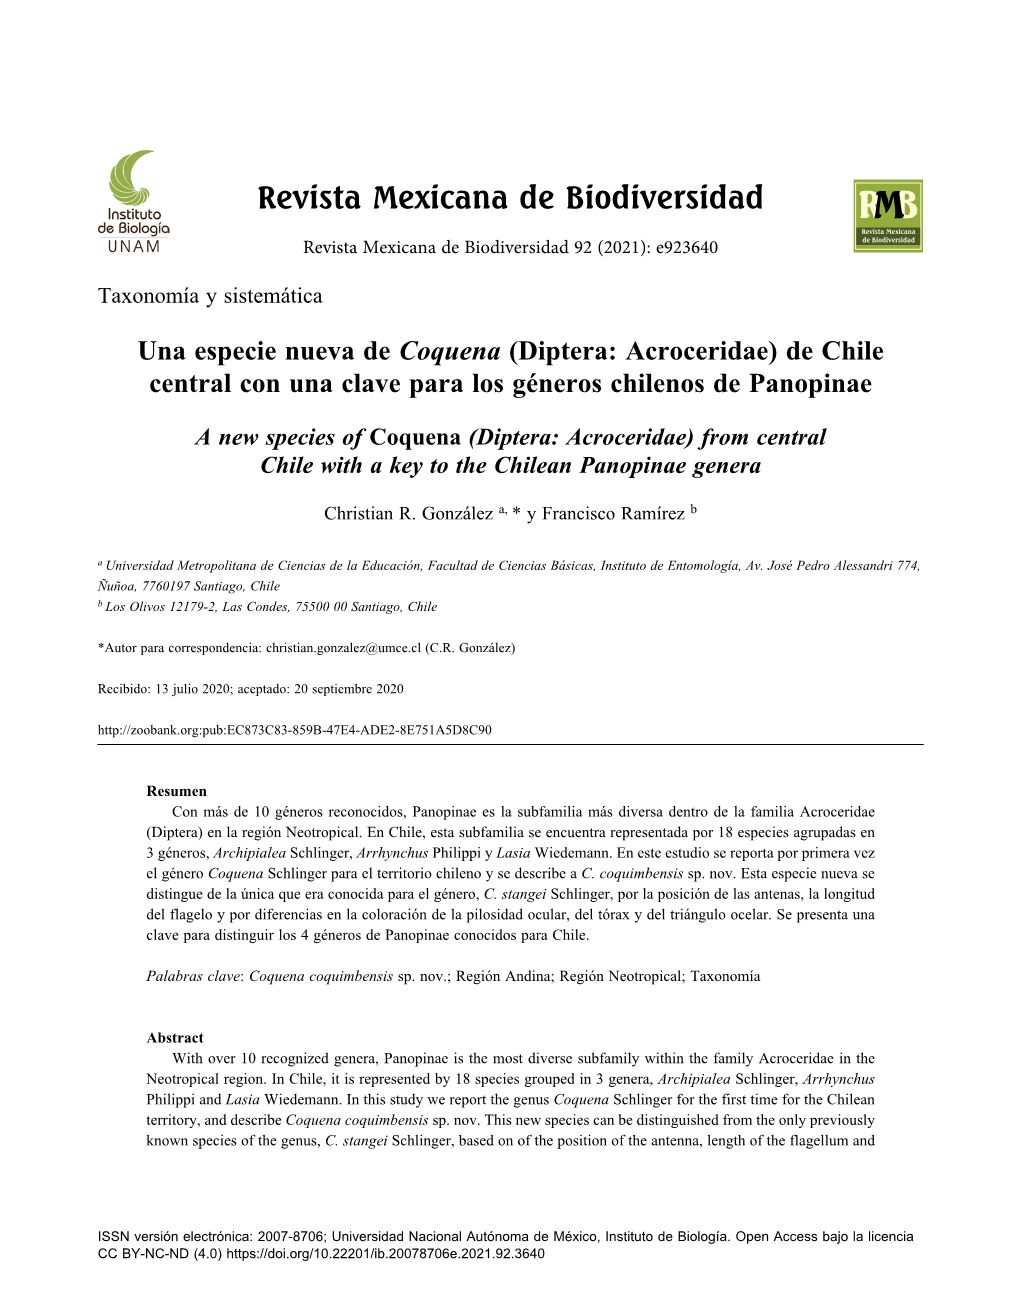 Diptera: Acroceridae) De Chile Central Con Una Clave Para Los Géneros Chilenos De Panopinae